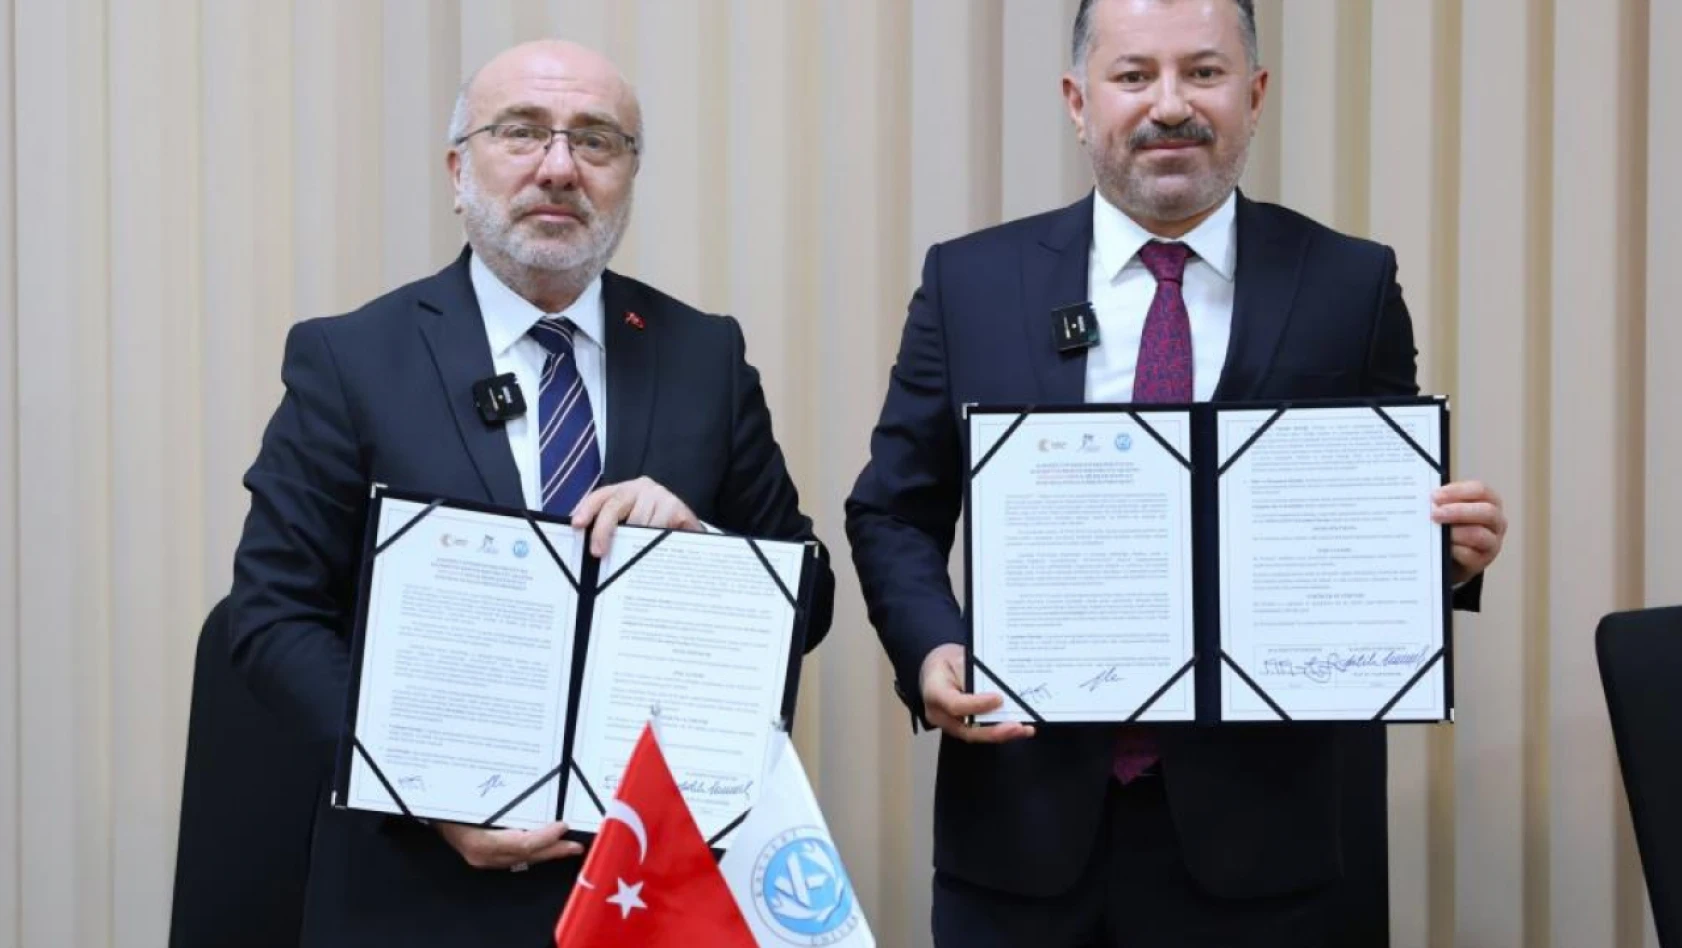 KAYÜ - KBÜ arasında SOSYALFEST kurumsal paydaş iş birliği protokolü imzalandı